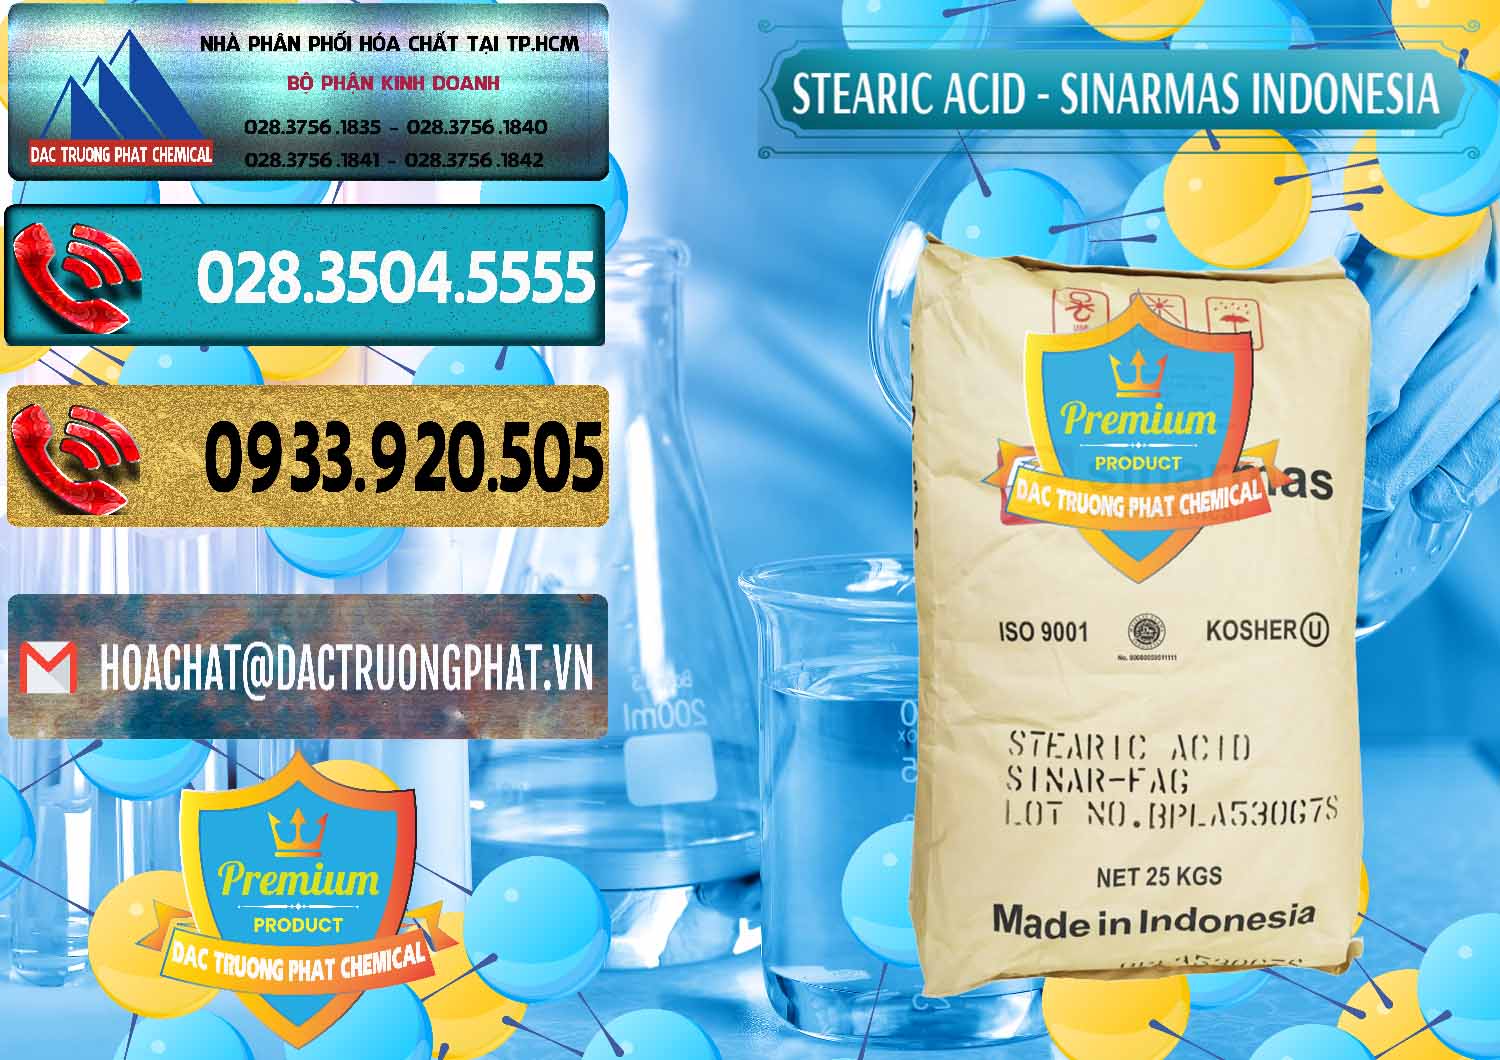 Nơi chuyên cung ứng ( bán ) Axit Stearic - Stearic Acid Sinarmas Indonesia - 0389 - Phân phối _ cung cấp hóa chất tại TP.HCM - hoachatdetnhuom.com